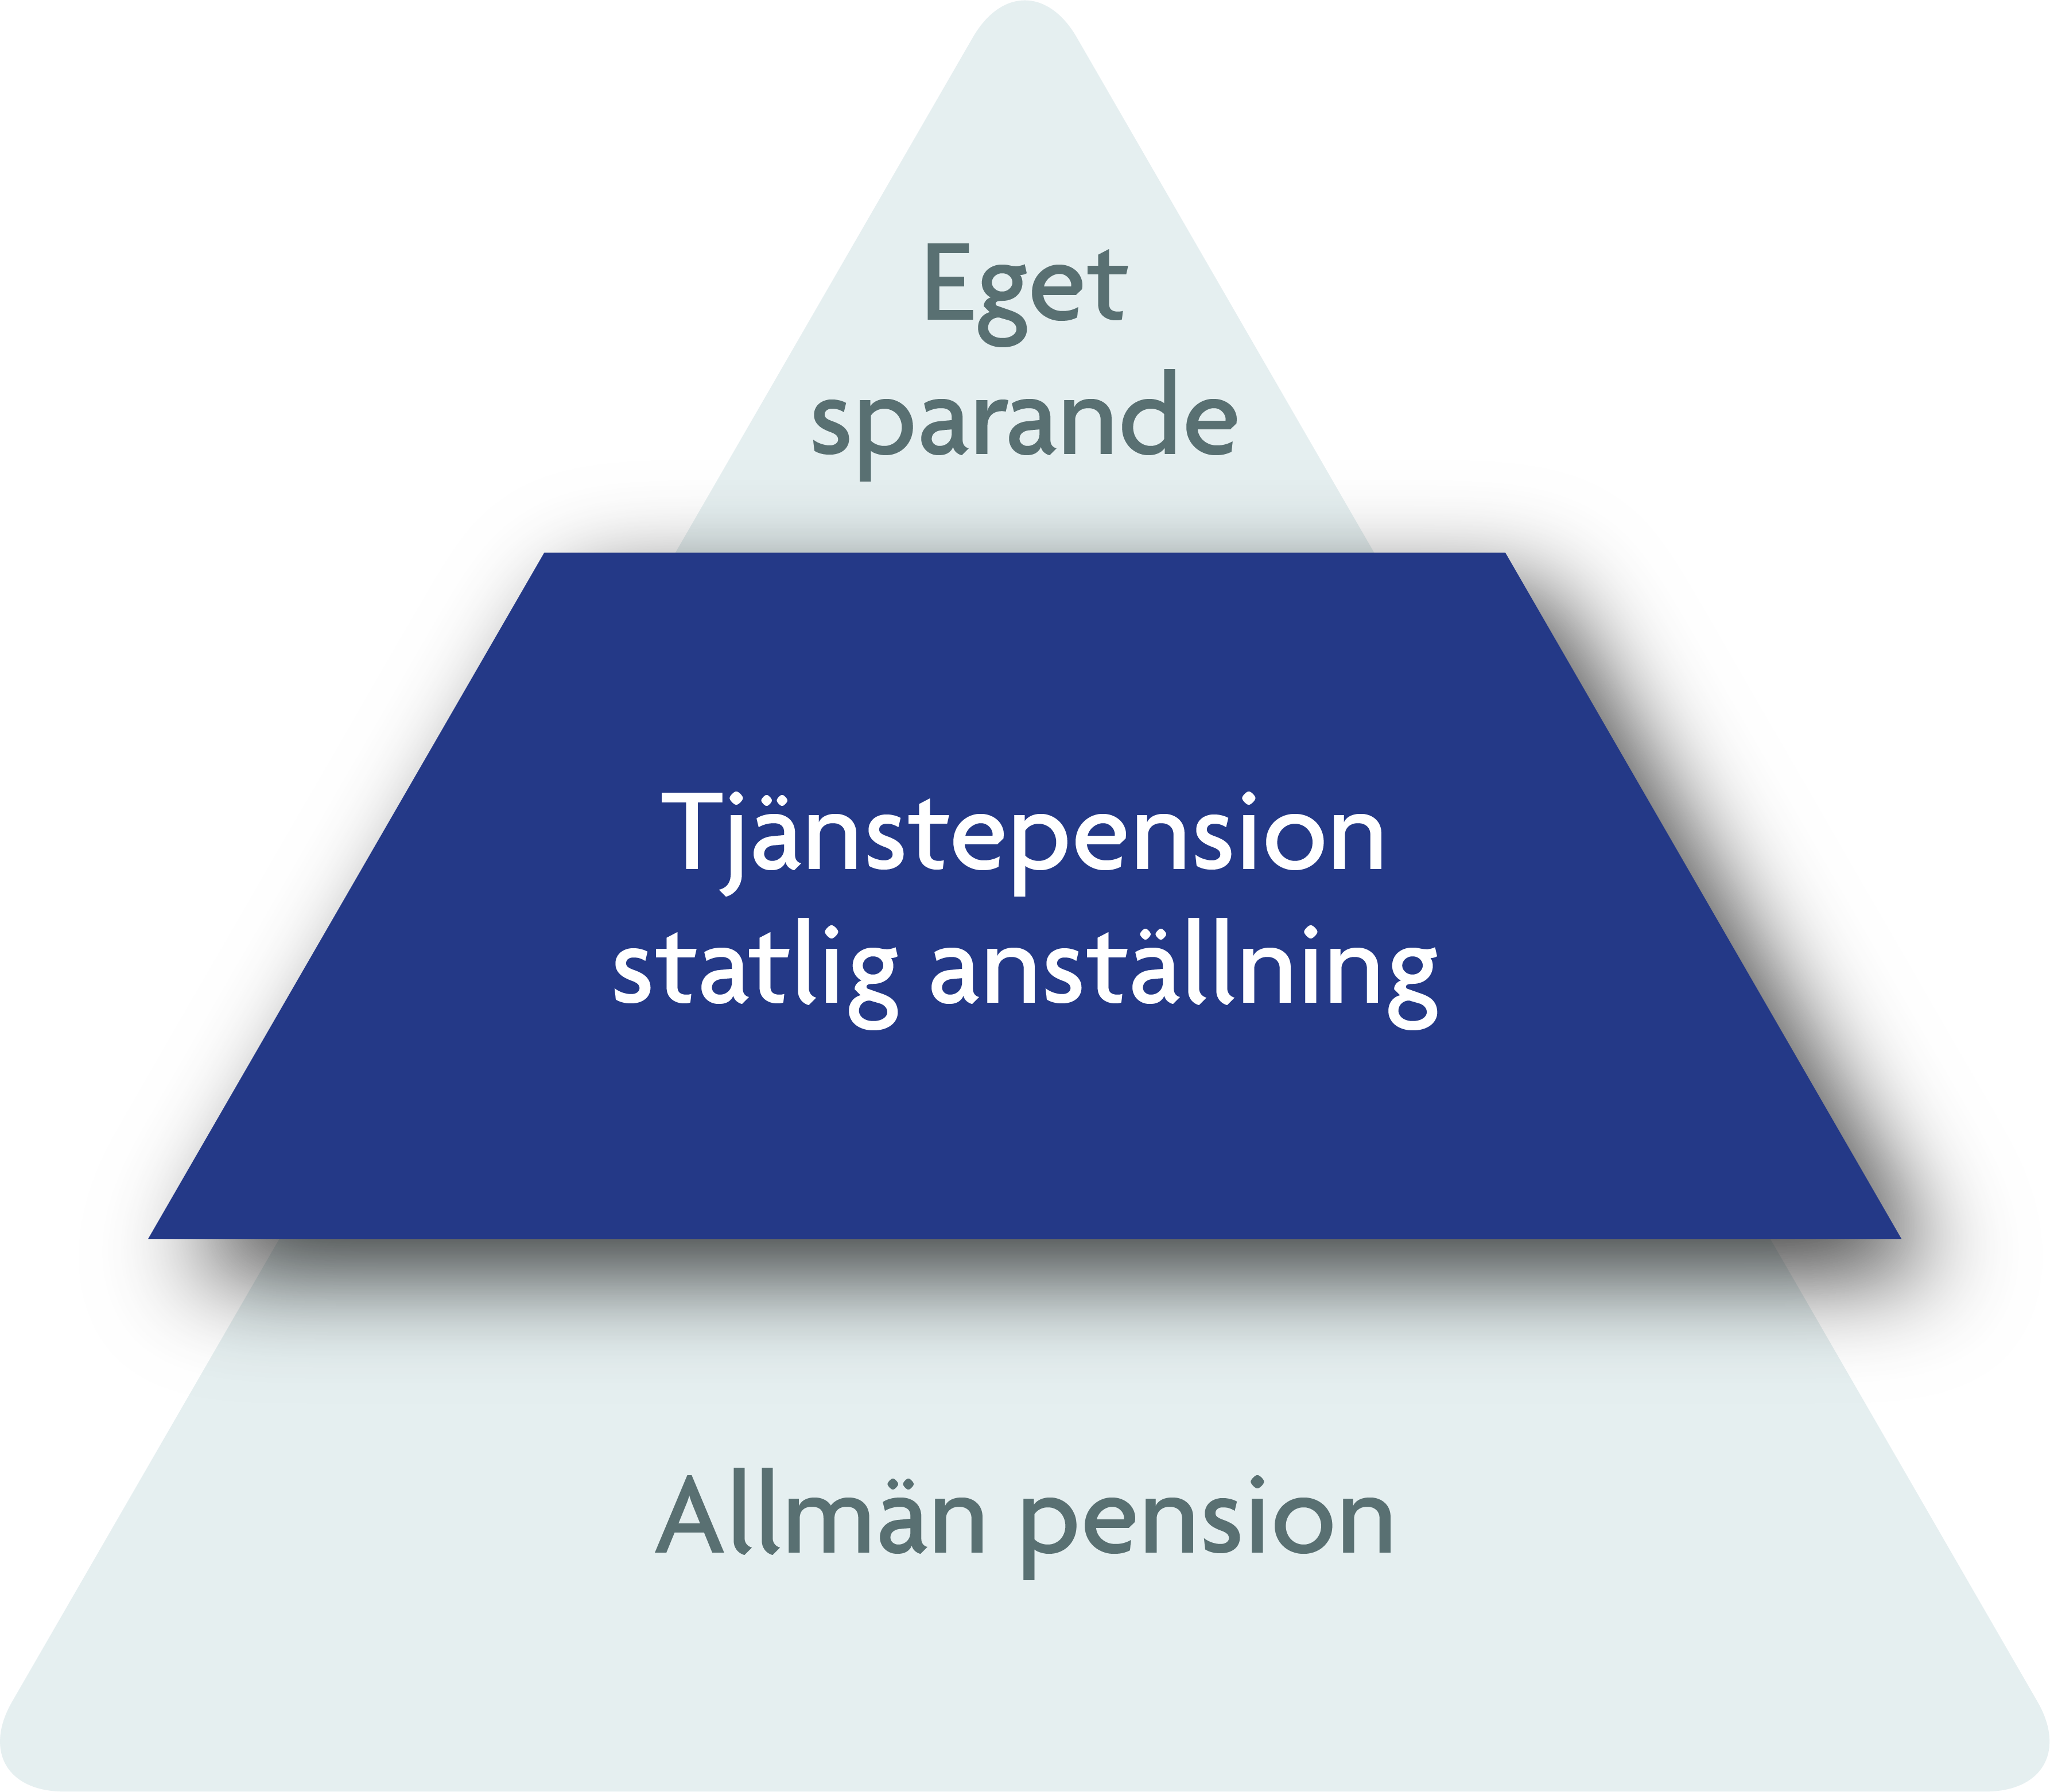 pensionspyramid_spv_hel_pyramid_fokus_statlig_tjanstepension_swosh_NEW.png